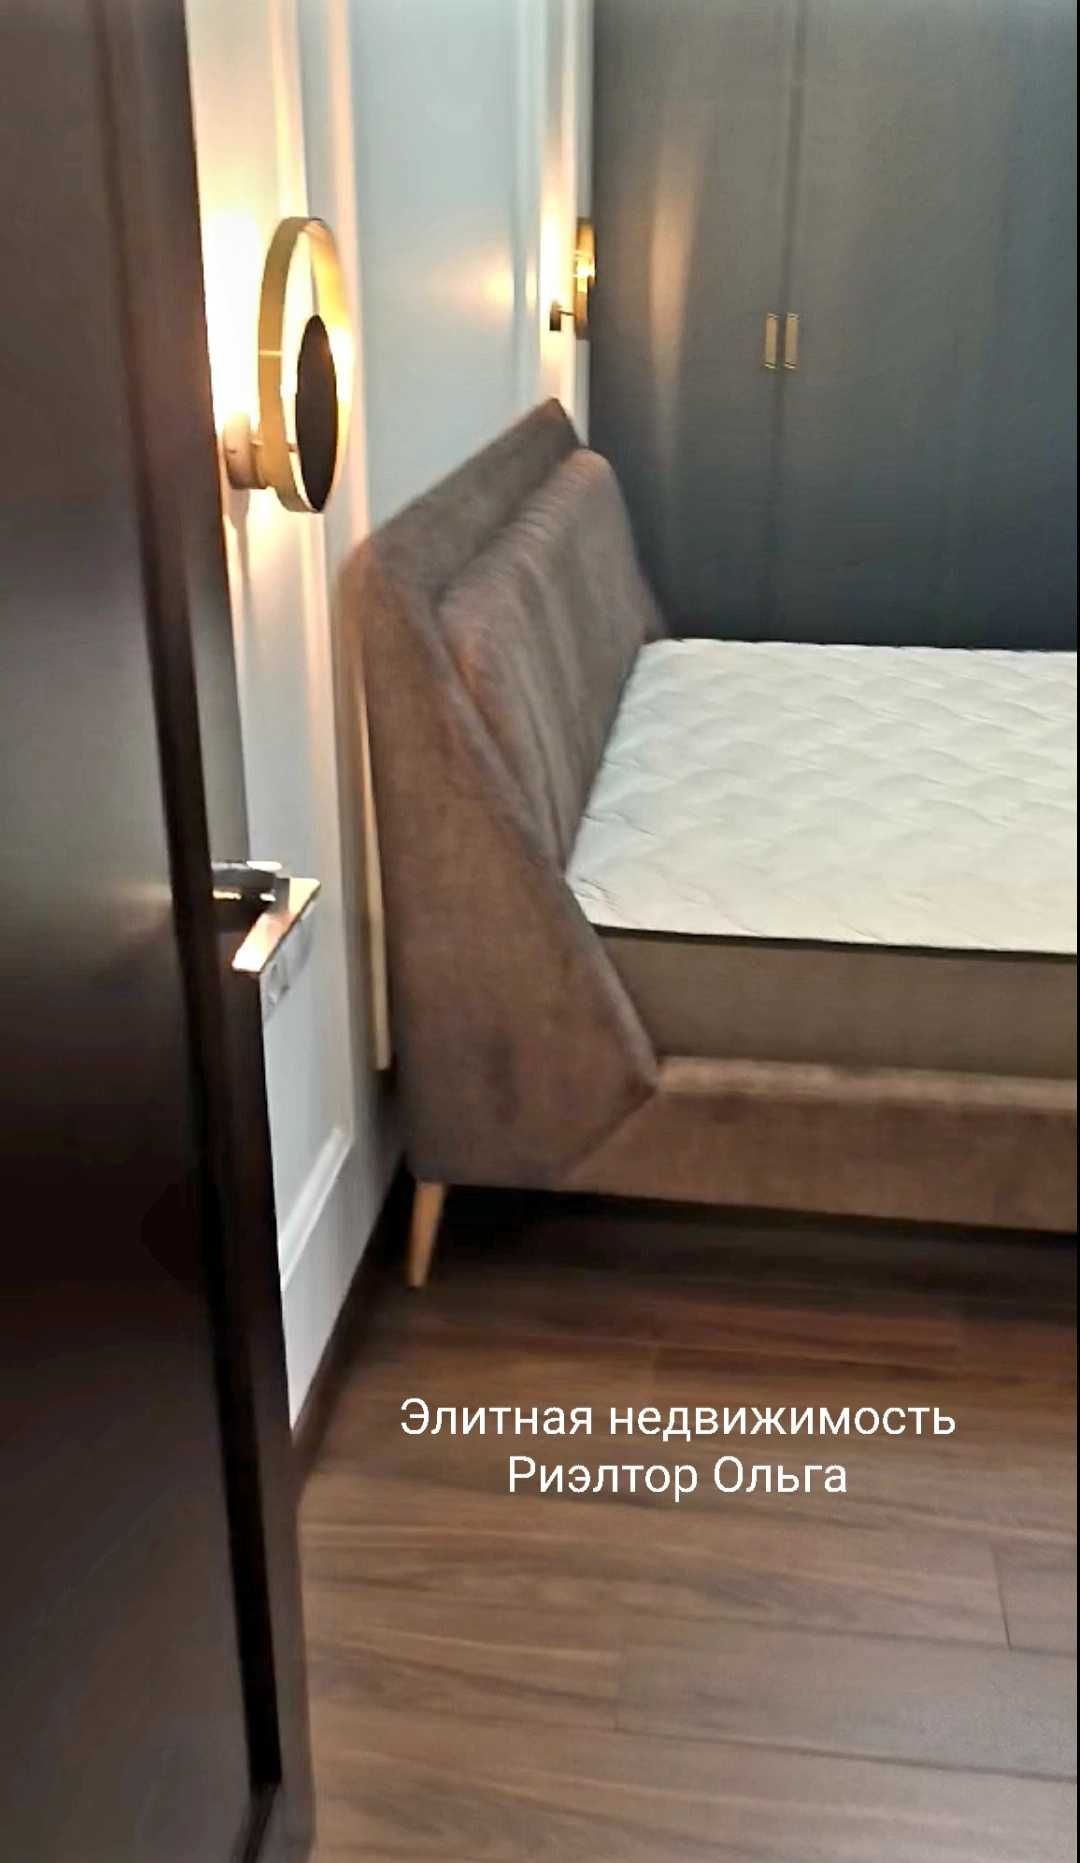 Новая 2-ух спальная с двуспальными кроватями ЖК "Башня Чкалов" 80 м!